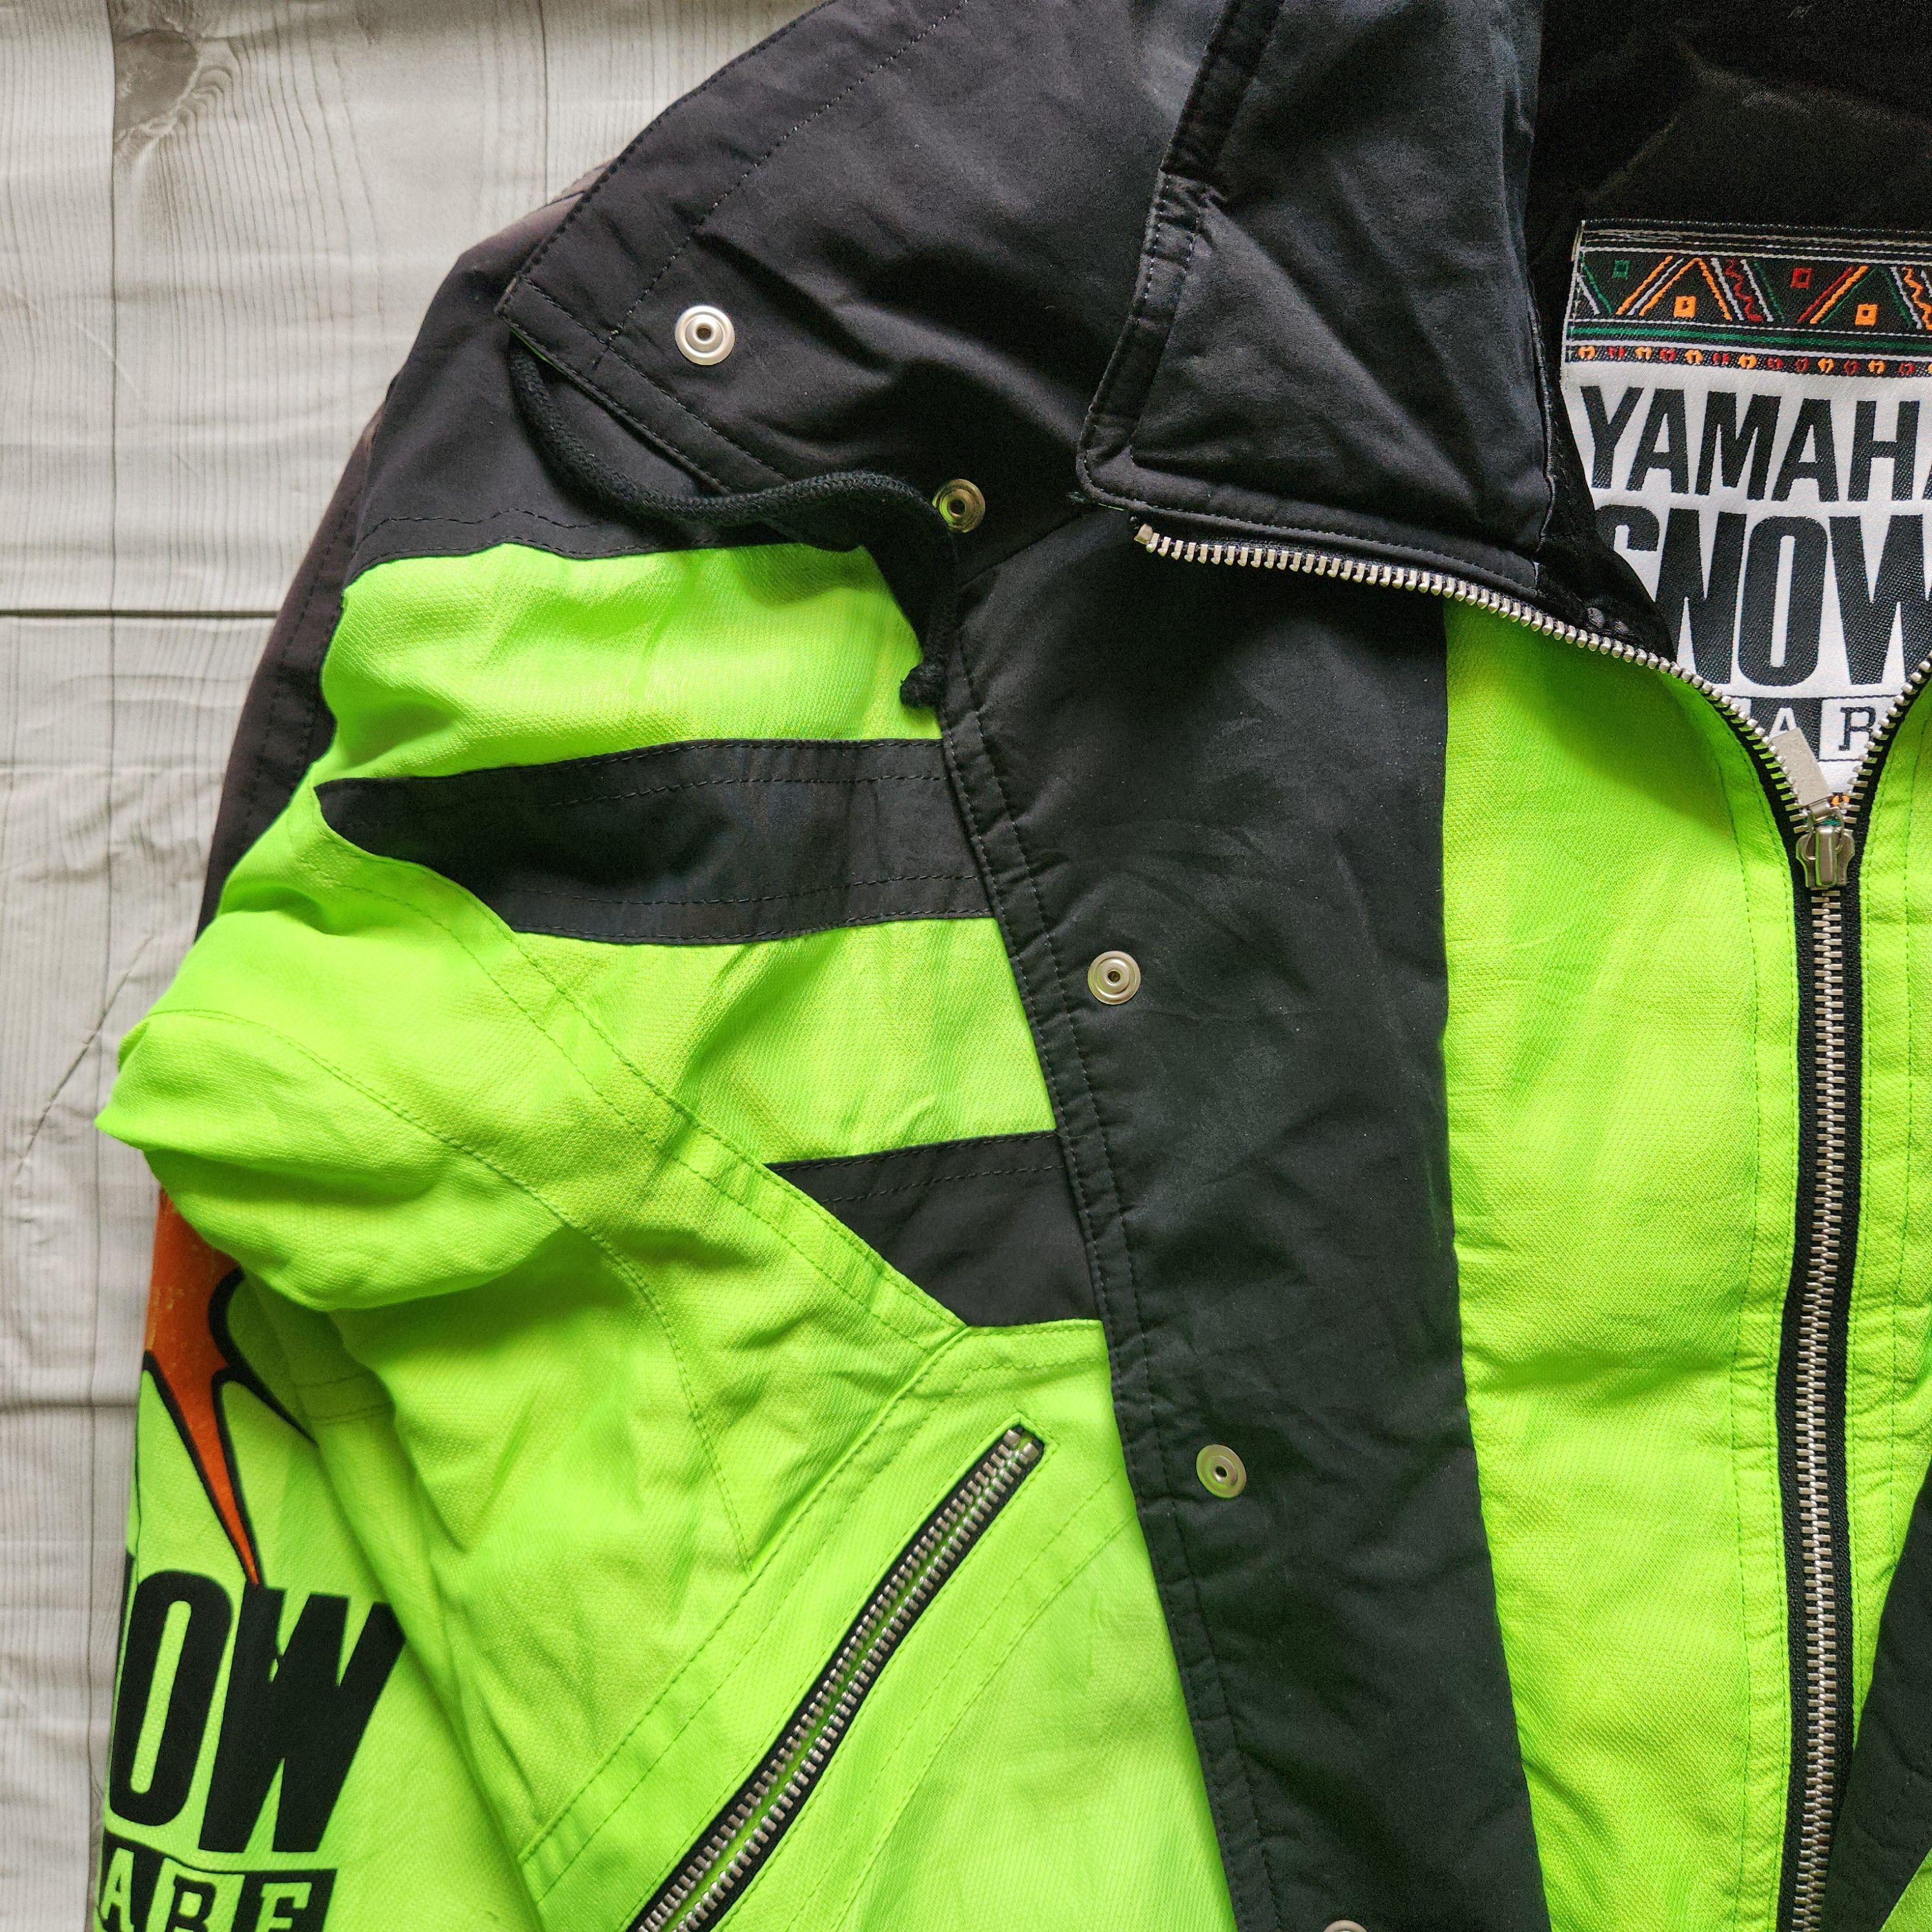 Yamaha - Yahama Snow Square Ski Jacket - 5